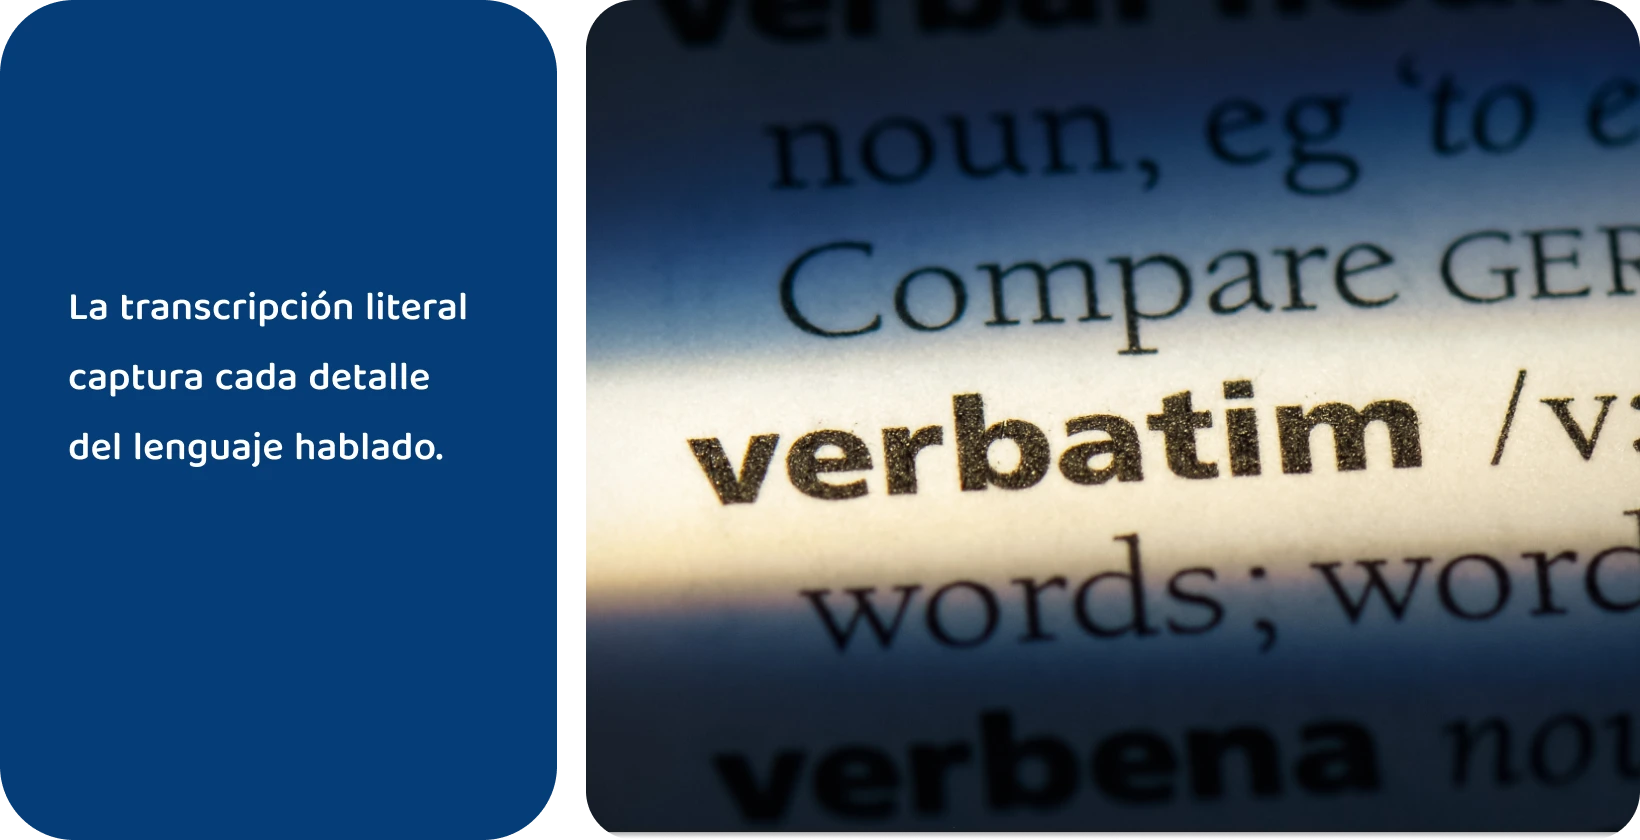 Entrada en el diccionario de la palabra 'verbatim' resaltada, que representa métodos de transcripción precisos.